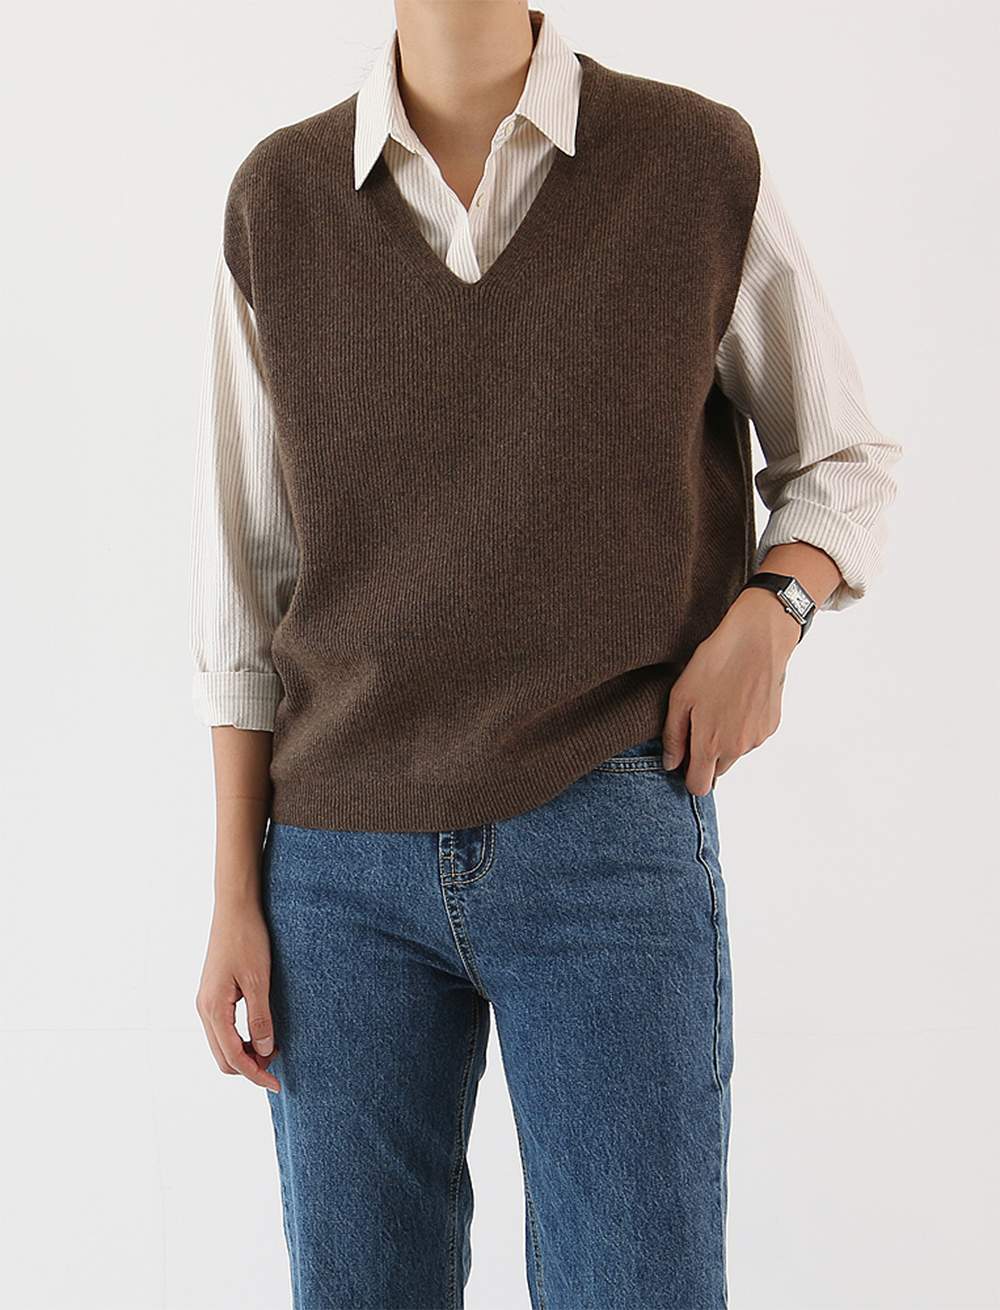 plat knit vest (4c)